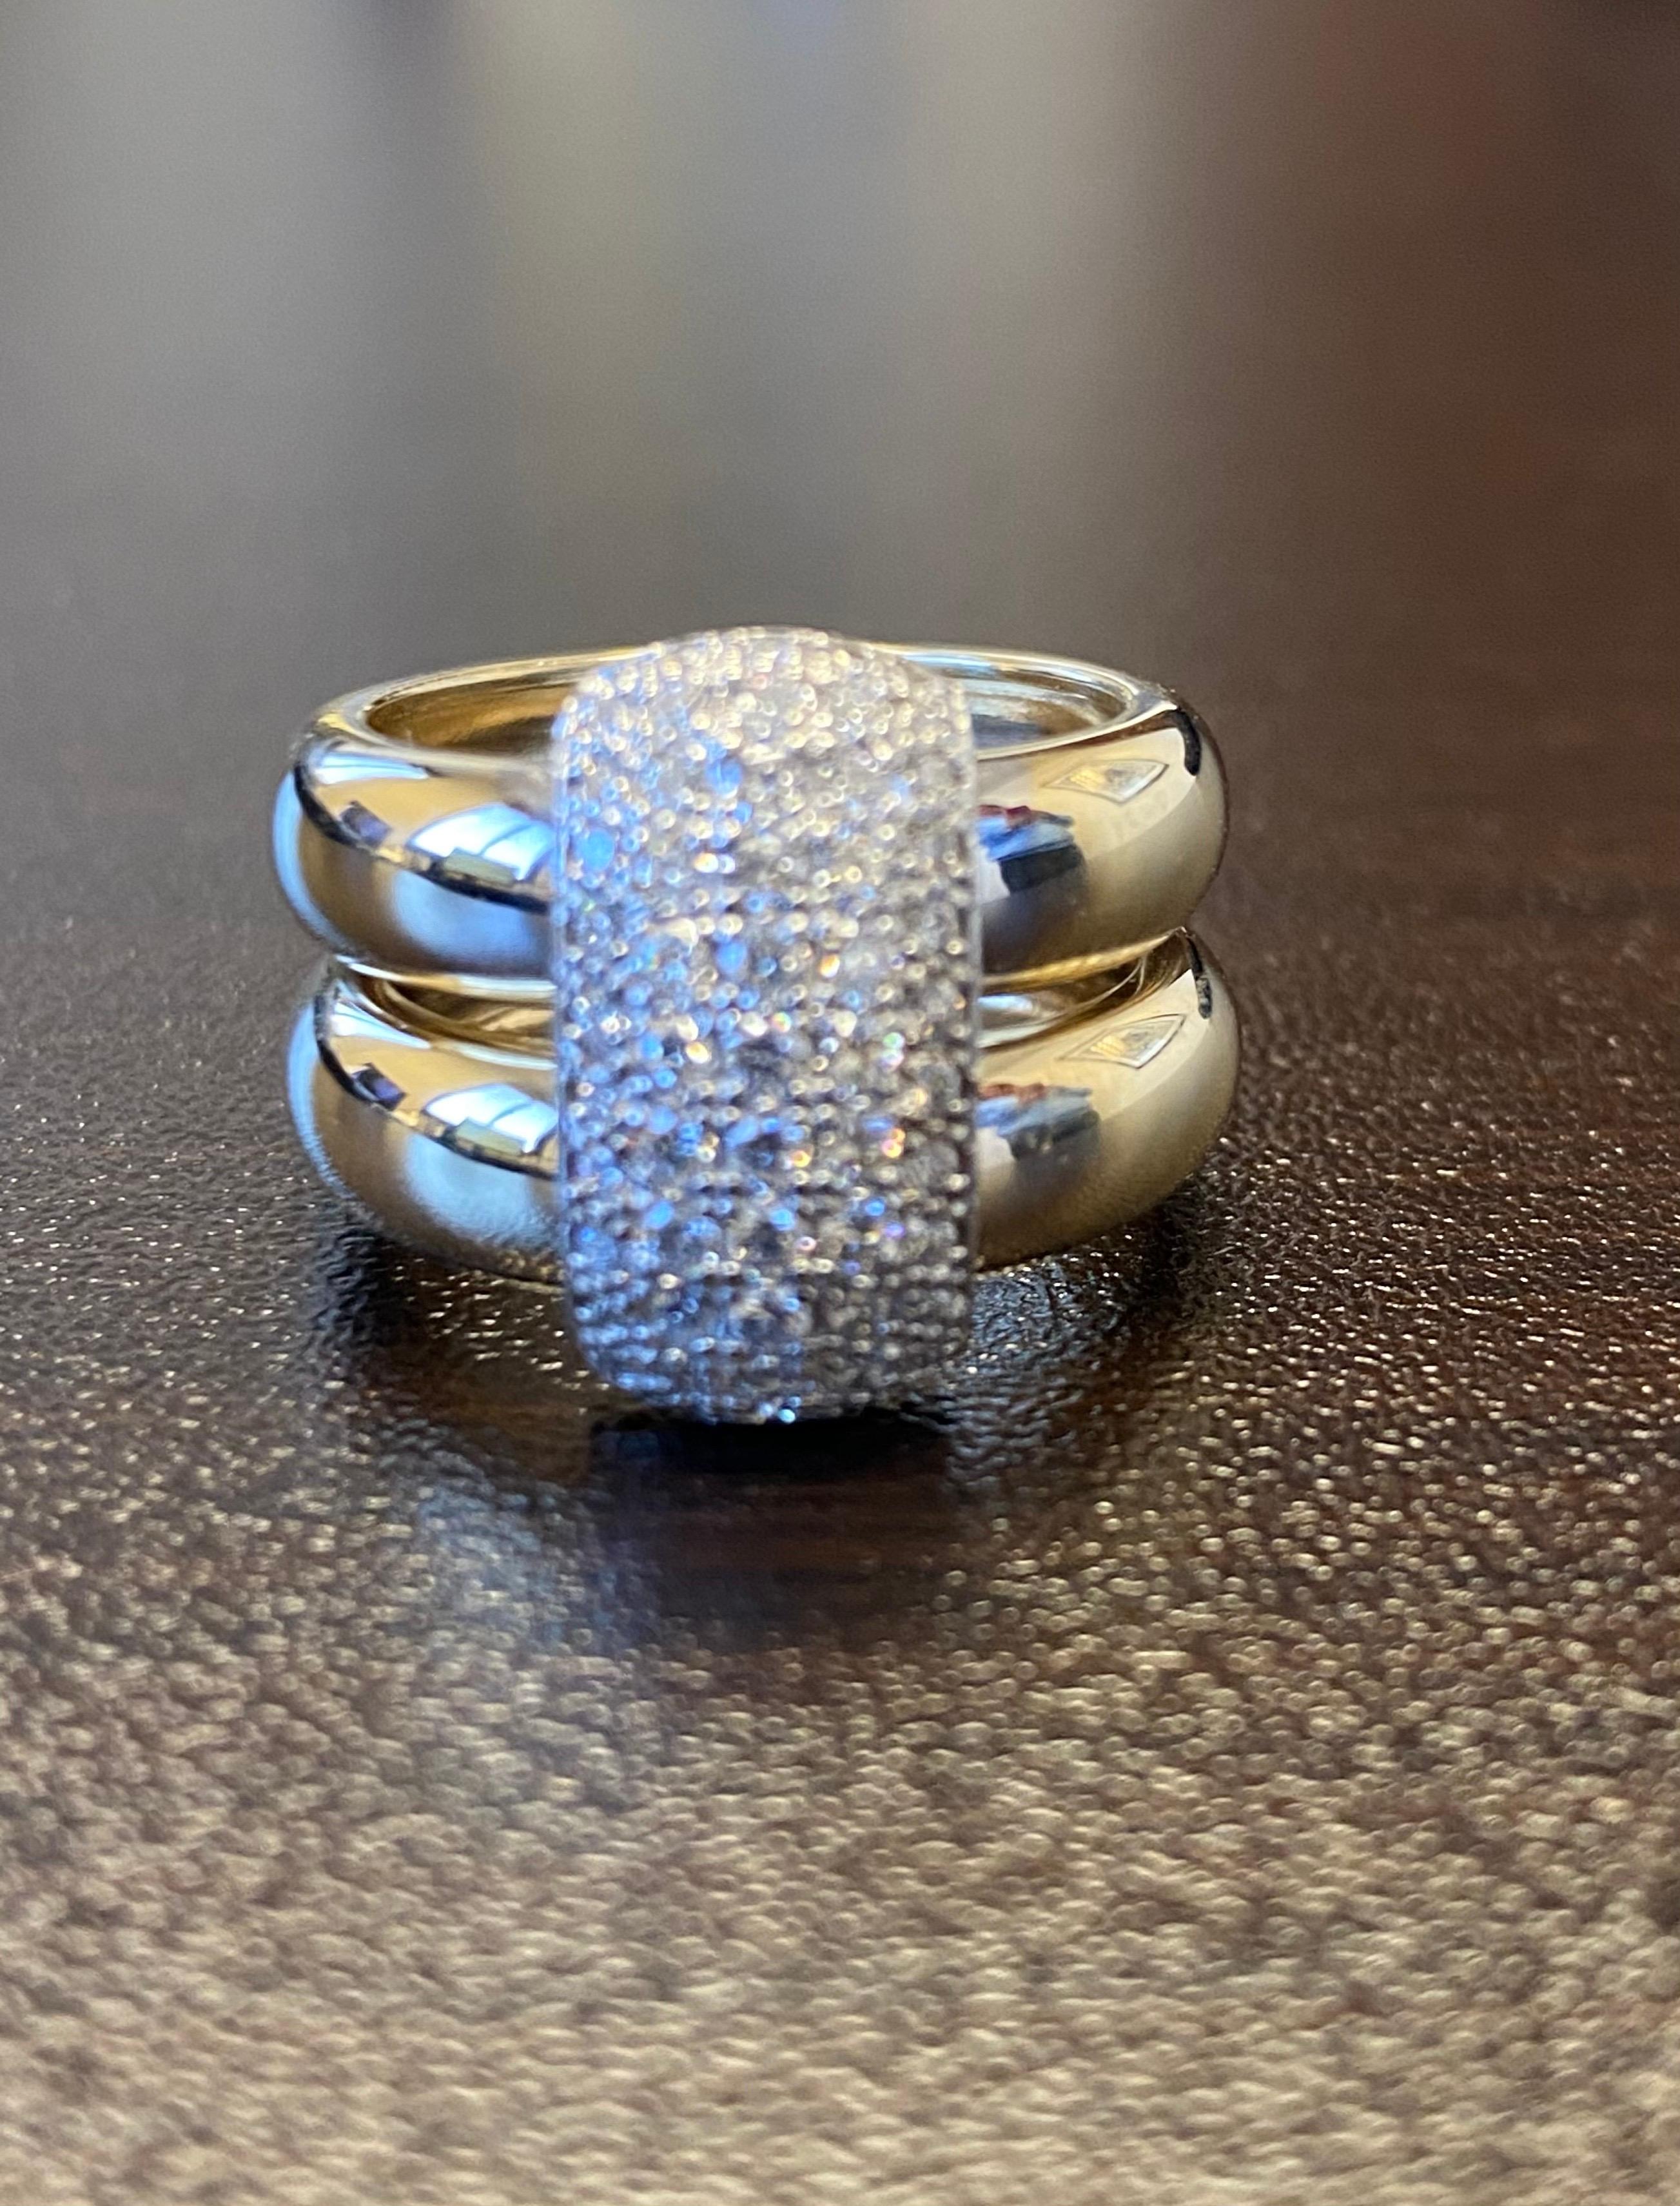 Diamantring, gefasst in 14K Weiß- und Gelbgold. Der Ring ist in einer Pave'-Fassung gefasst, das Gesamtkaratgewicht beträgt 0,90 Karat. Die Farbe der Steine ist G, die Reinheit ist SI1. Der Ring hat die Größe 6,5.